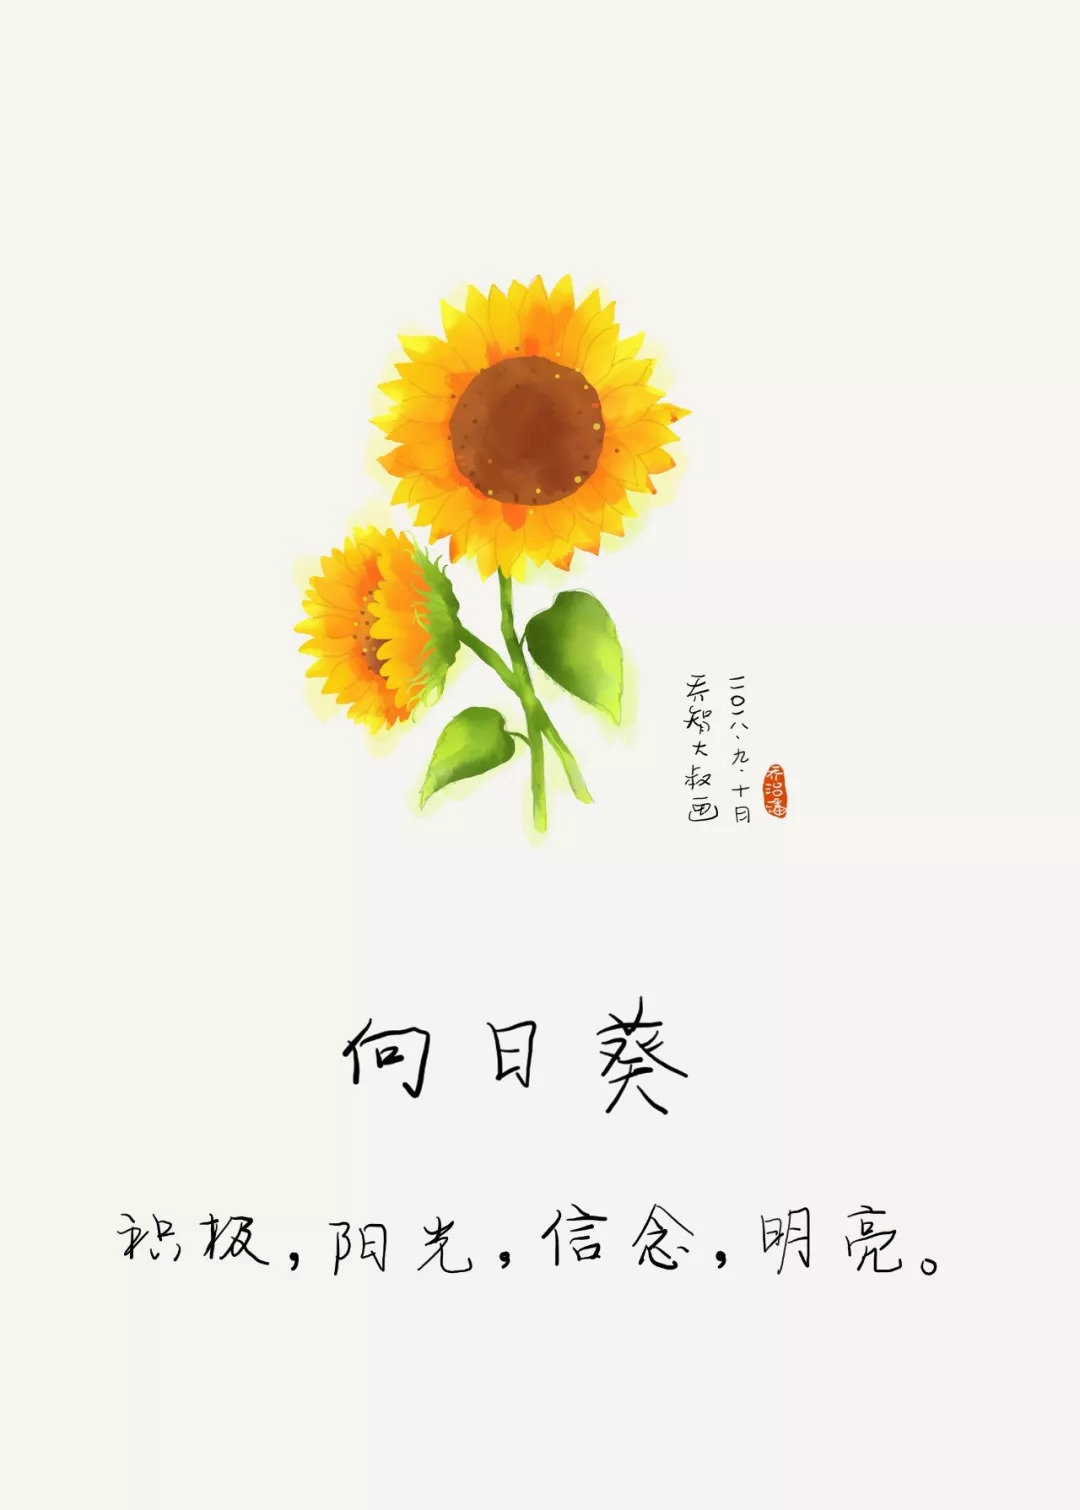 带文字的向日葵花语图片